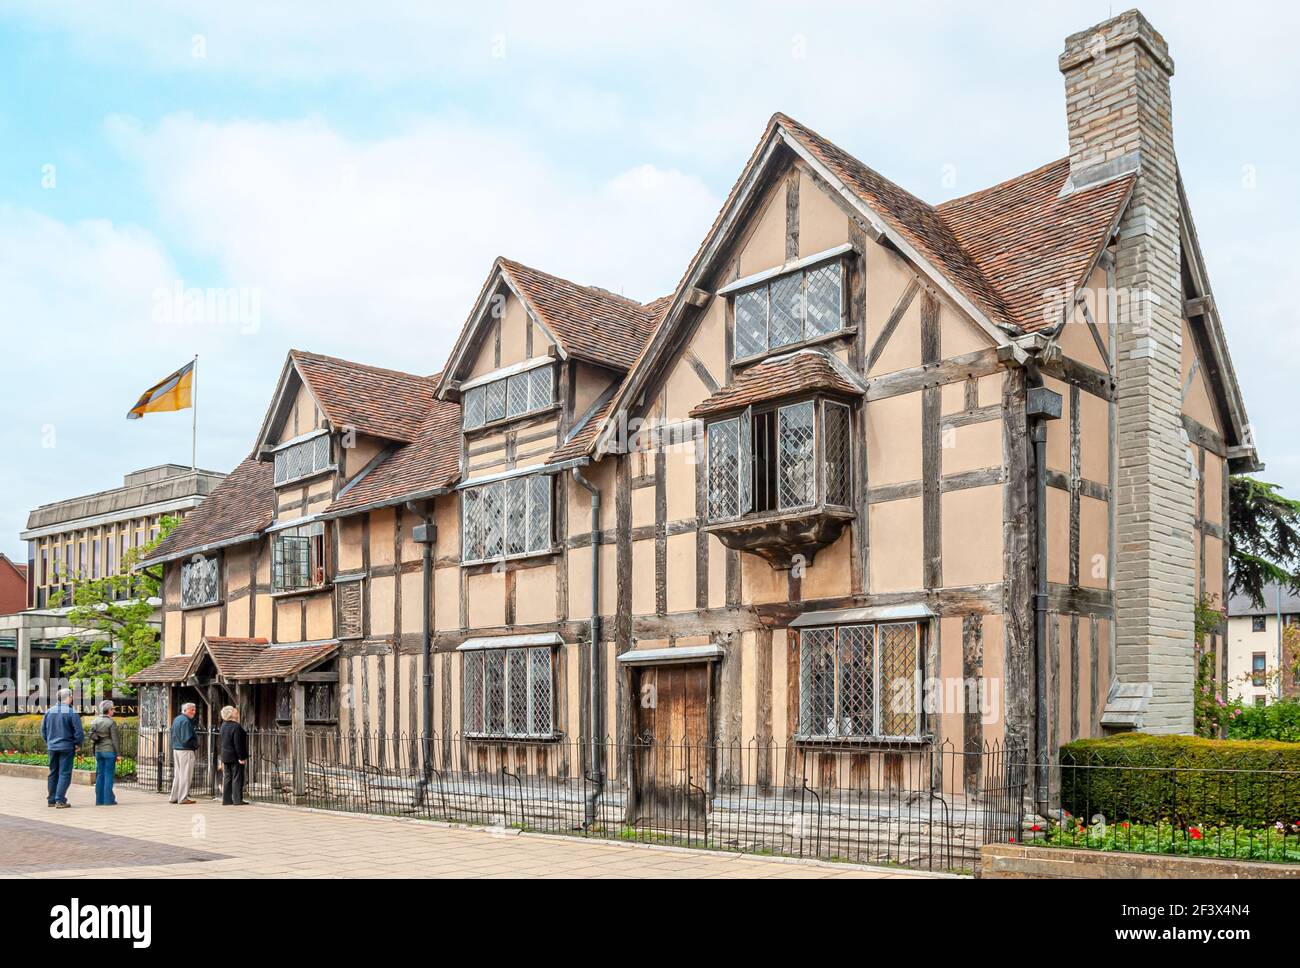 Lieu de naissance de Shakespeare où il est né en 1564 à Stratford-upon-Avon, en Angleterre Banque D'Images